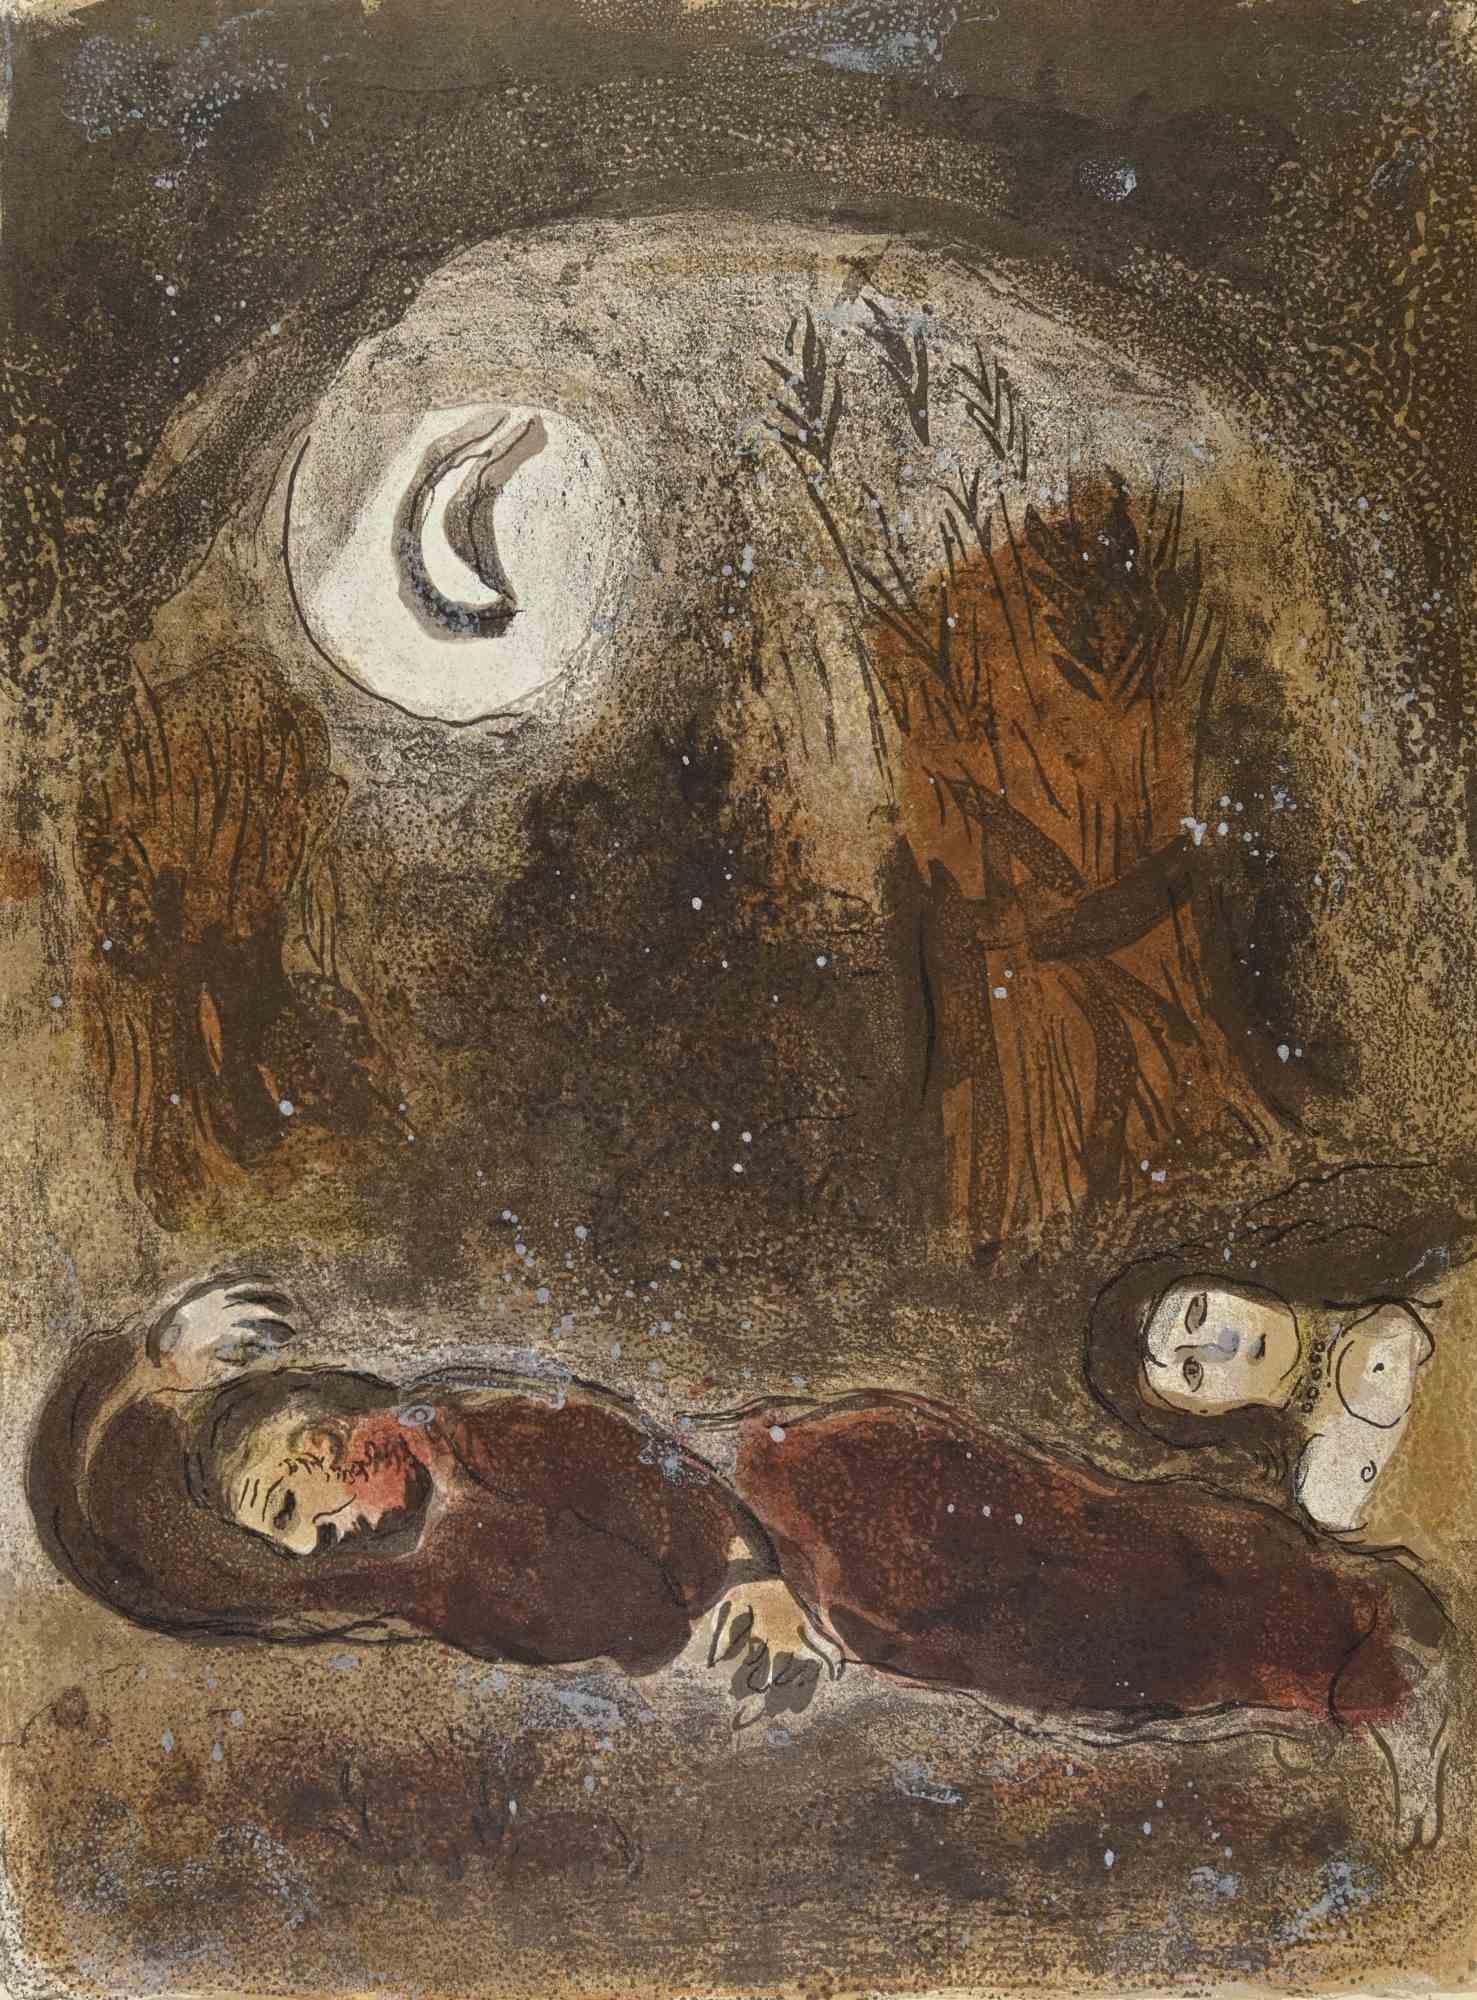 Ruth zu Füßen des Boas ist ein Kunstwerk aus der Serie "Die Bibel" von Marc Chagall aus dem Jahr 1960.
Farblithografie auf braunem Papier, ohne Signatur.
Auflage von 6500 unsignierten Lithografien. Gedruckt von Mourlot und veröffentlicht von